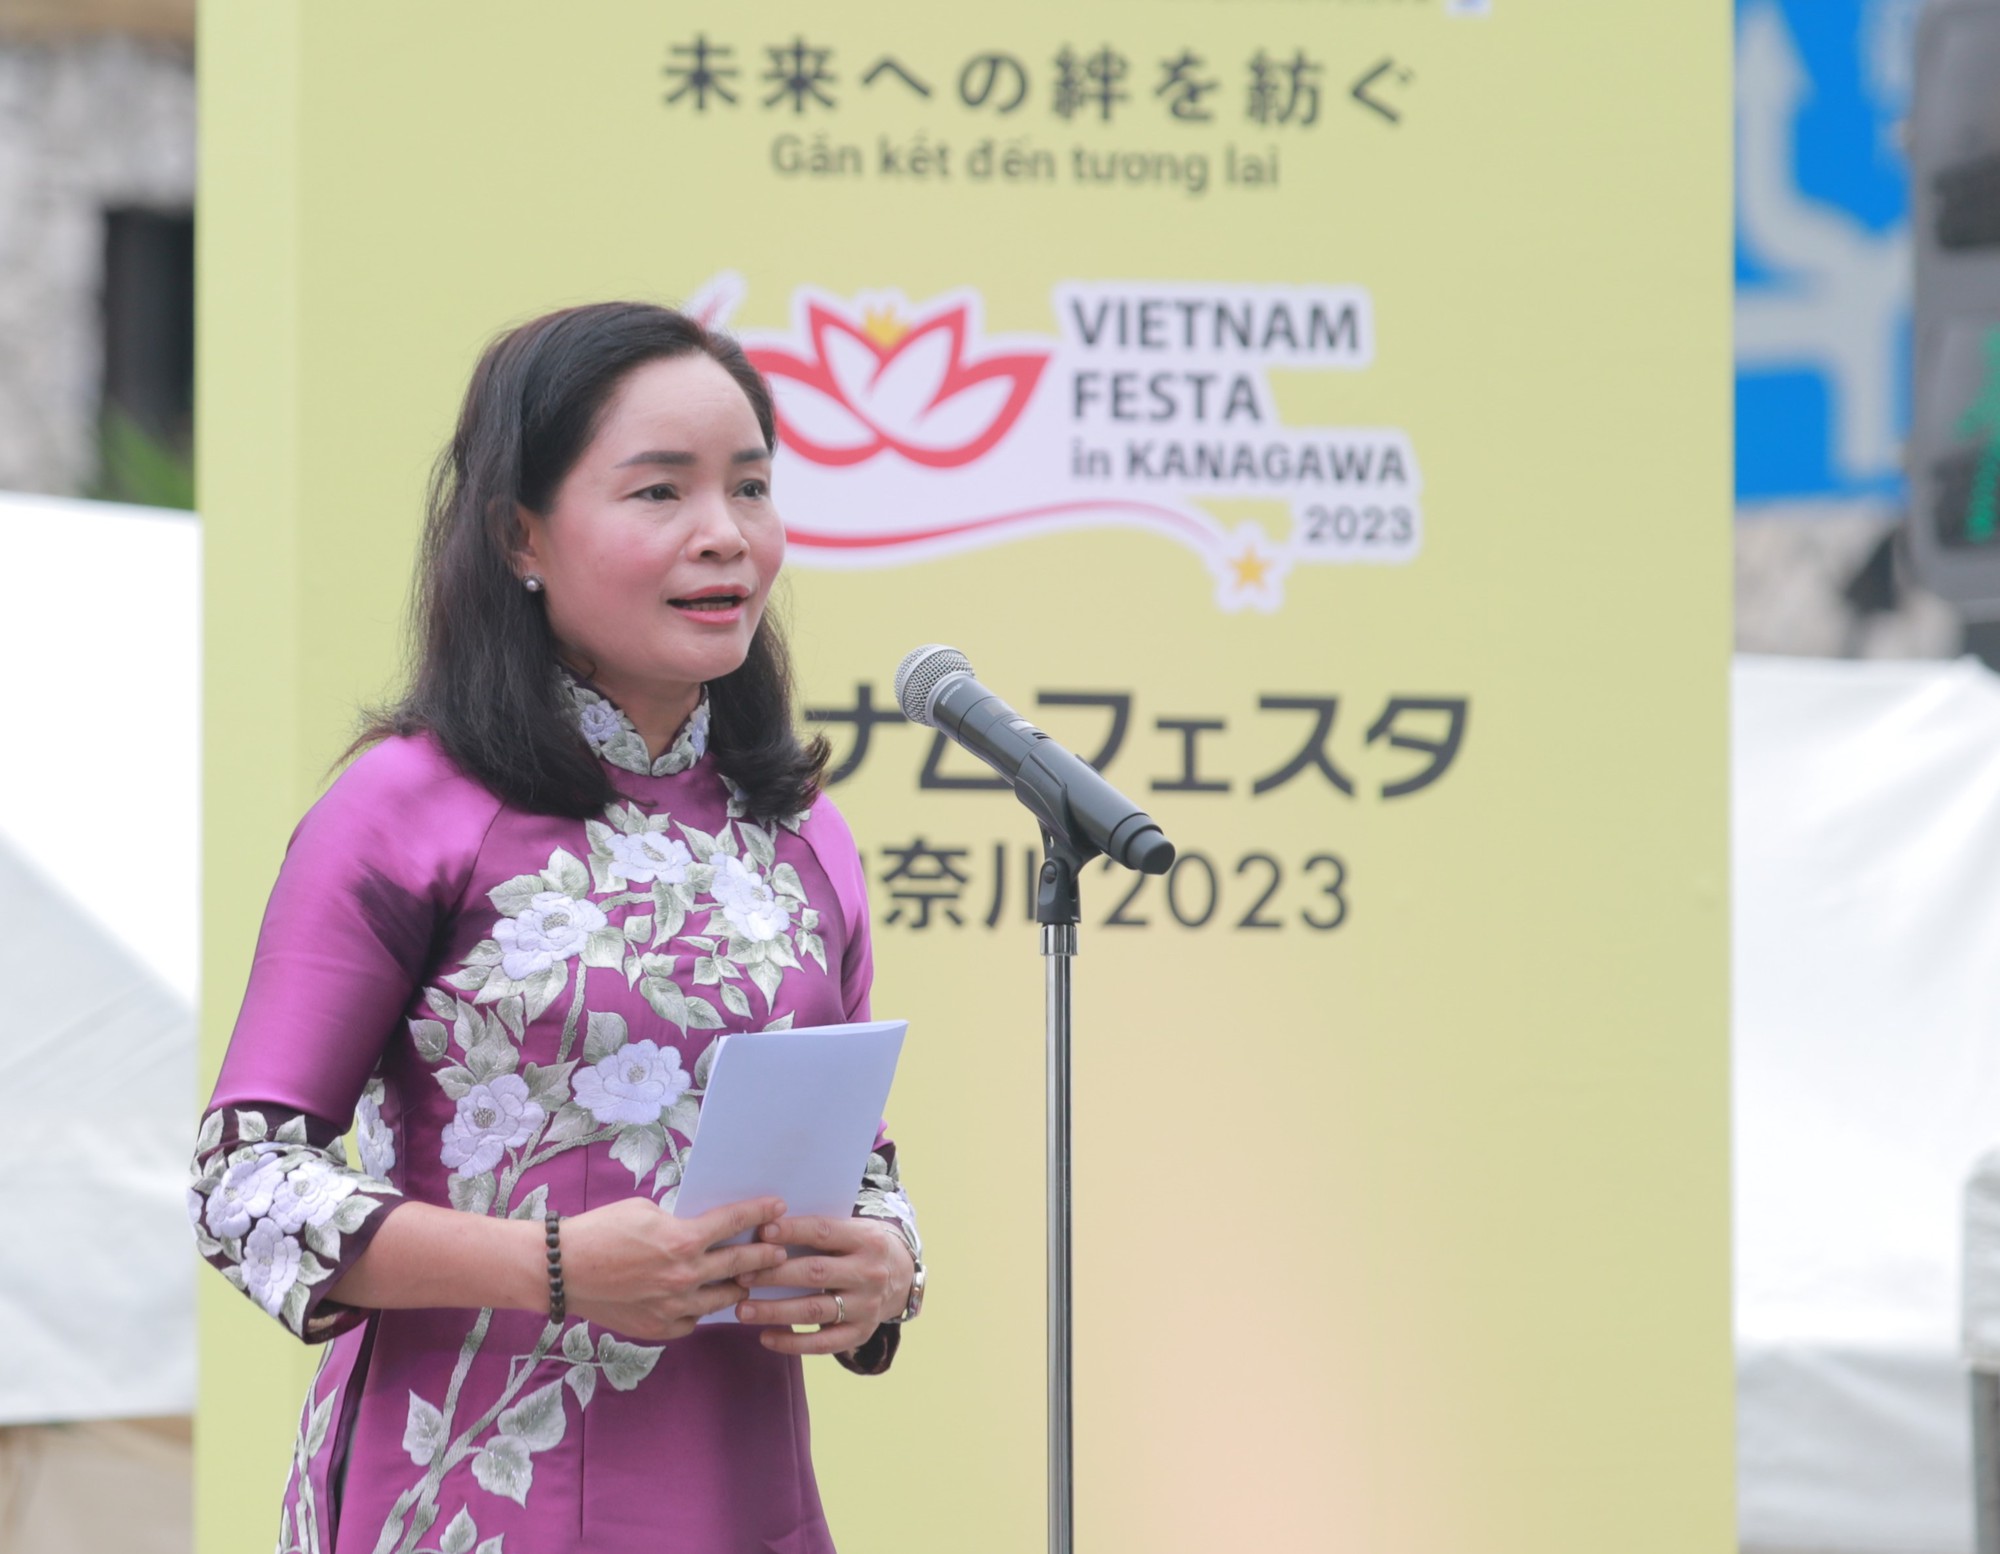 Chính thức khai mạc Lễ hội xúc tiến du lịch - văn hoá Việt Nam tại Kanagawa 2023  - Ảnh 2.